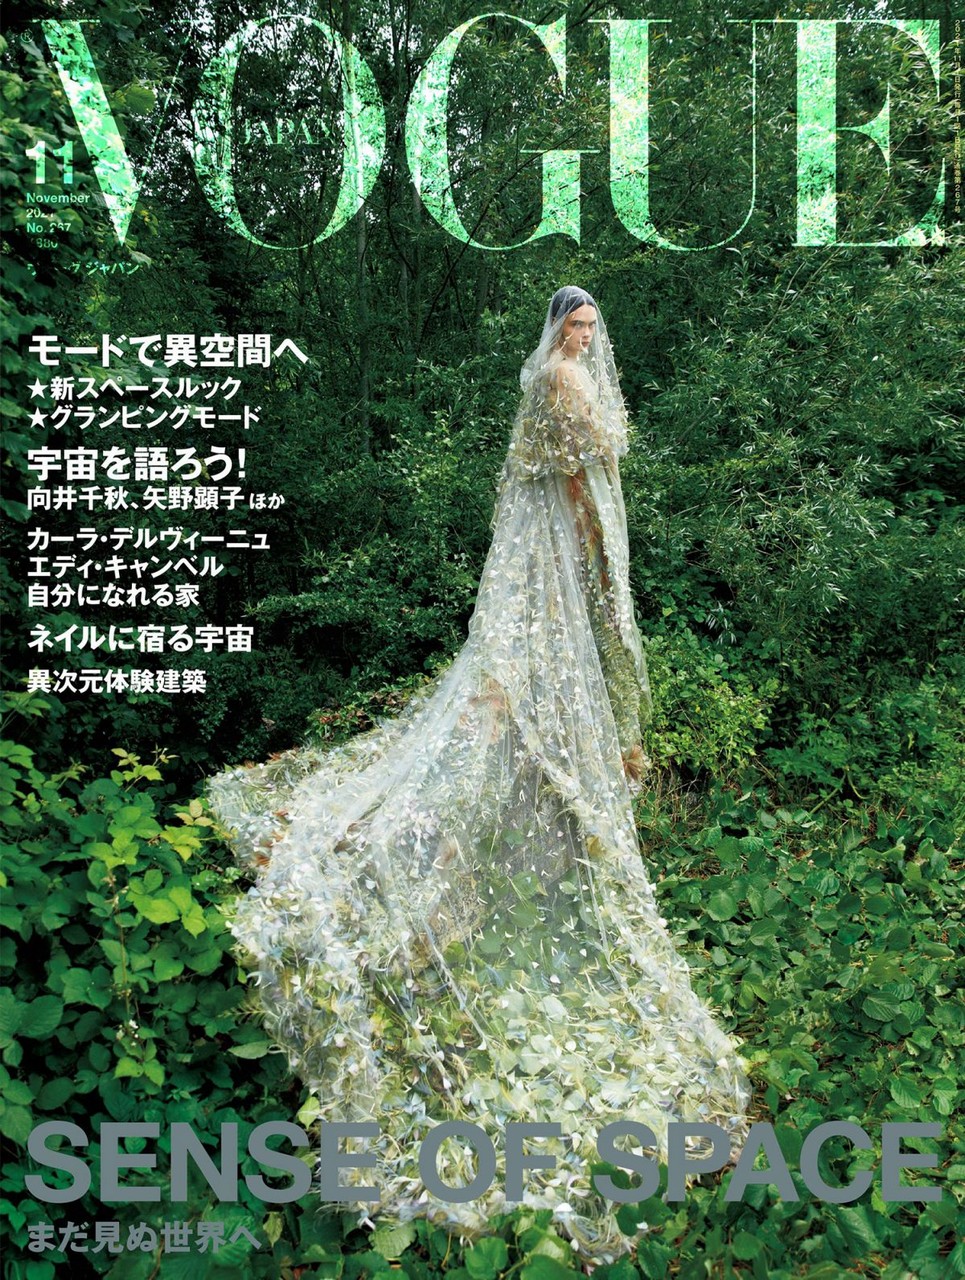 Cara Delevingne For Vogue Magazine Japan November